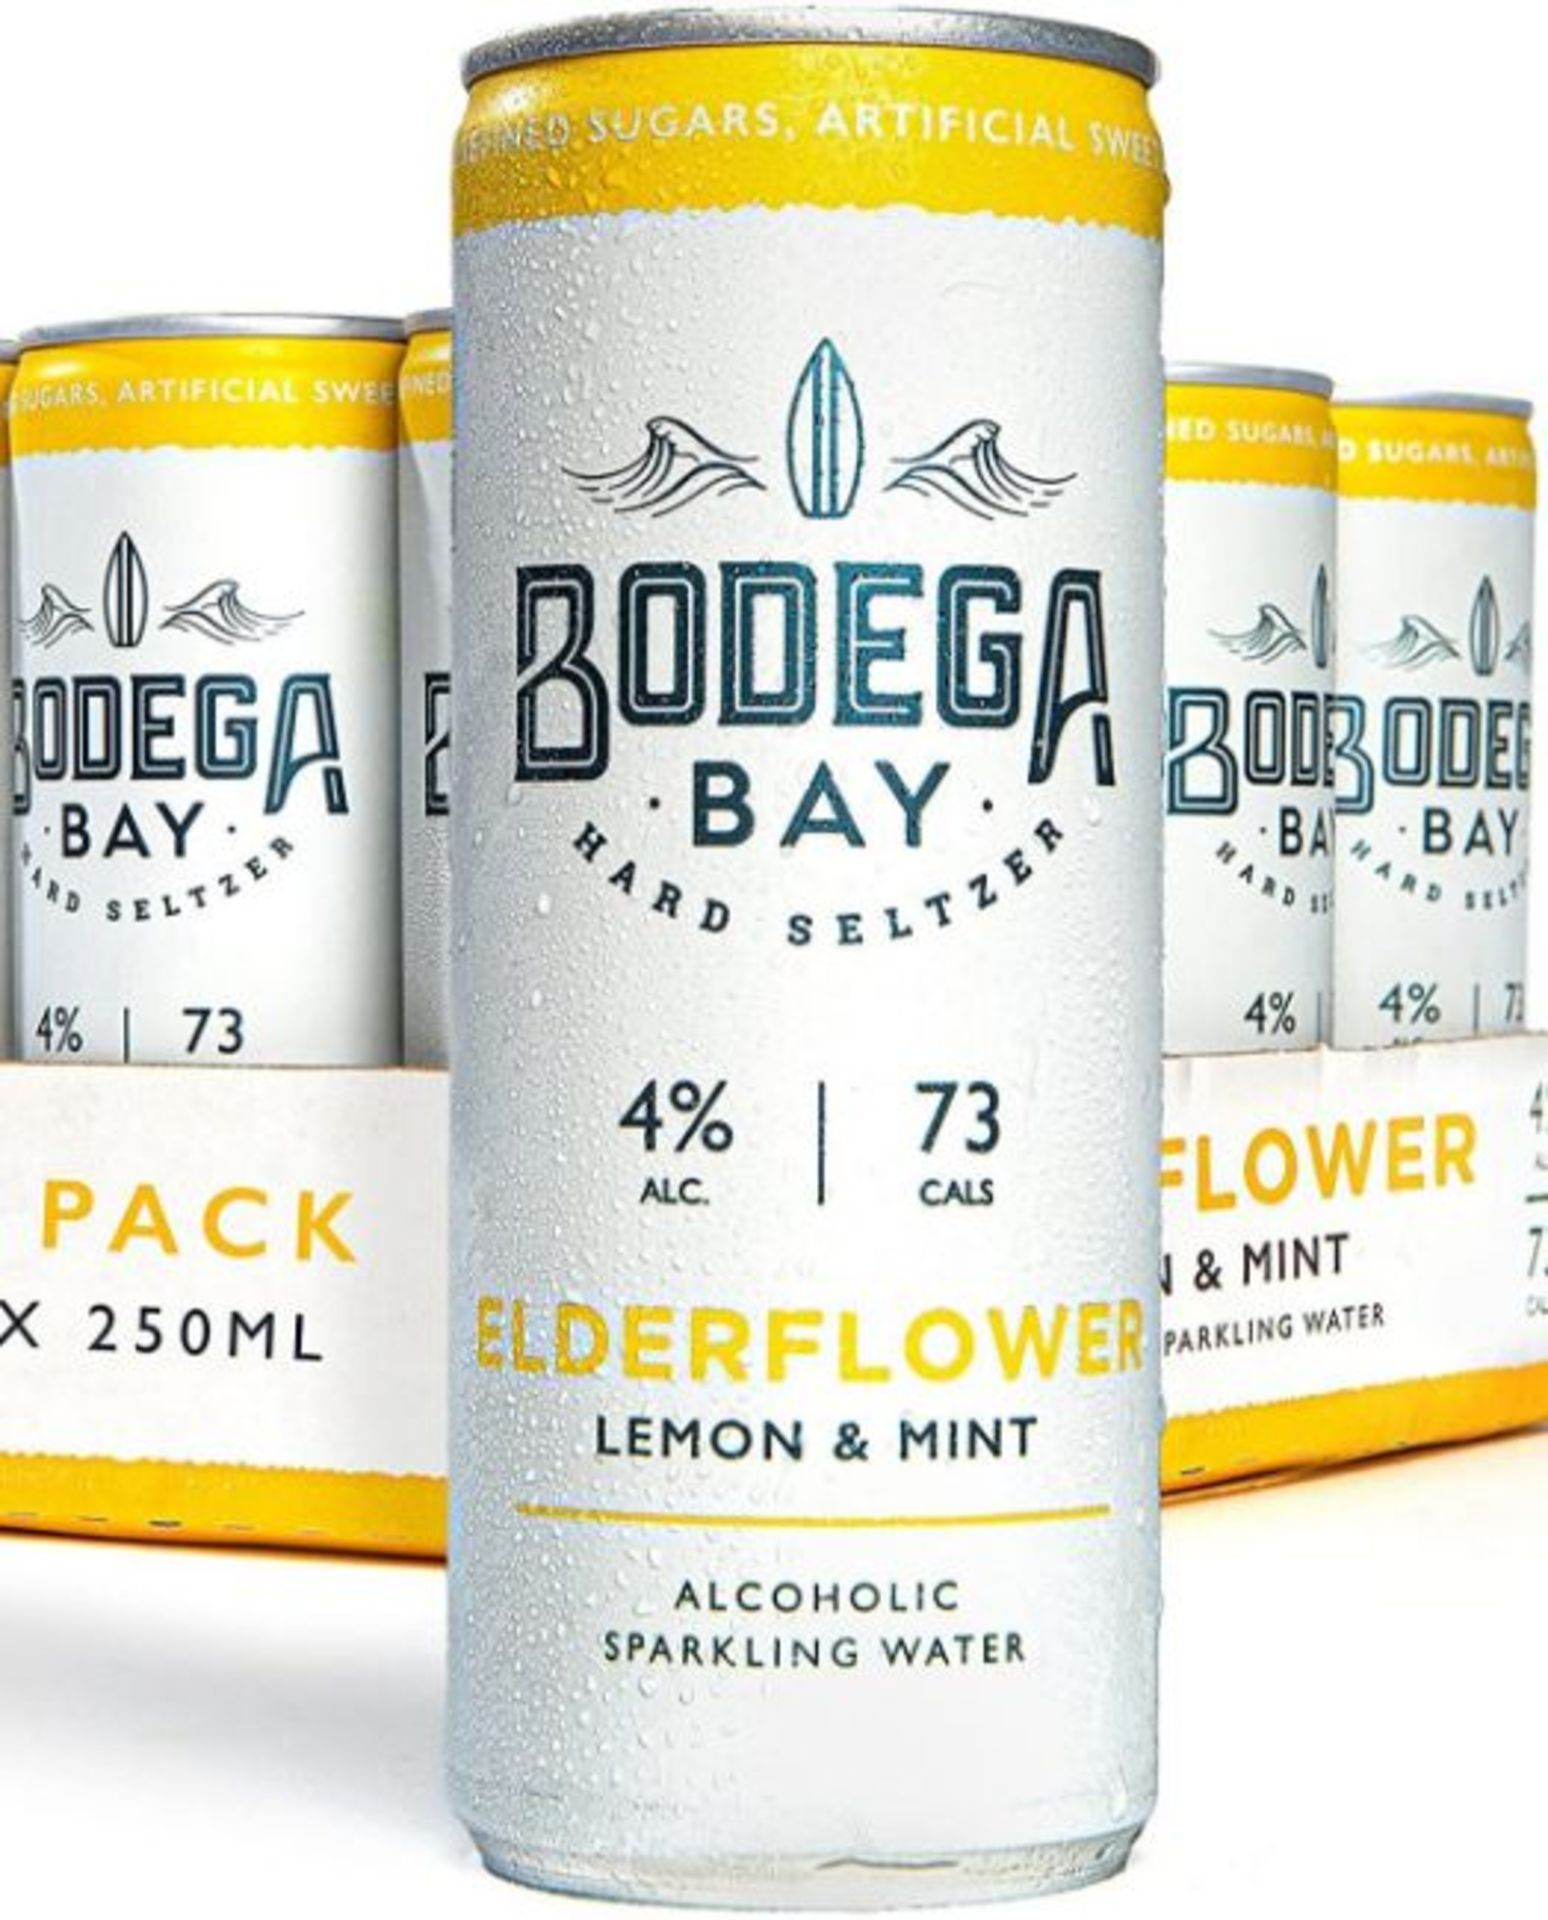 24 x Bodega Bay Hard Seltzer 250ml Alcoholic Sparkling Water Drinks - Elderflower Lemon & Mint - Image 3 of 9